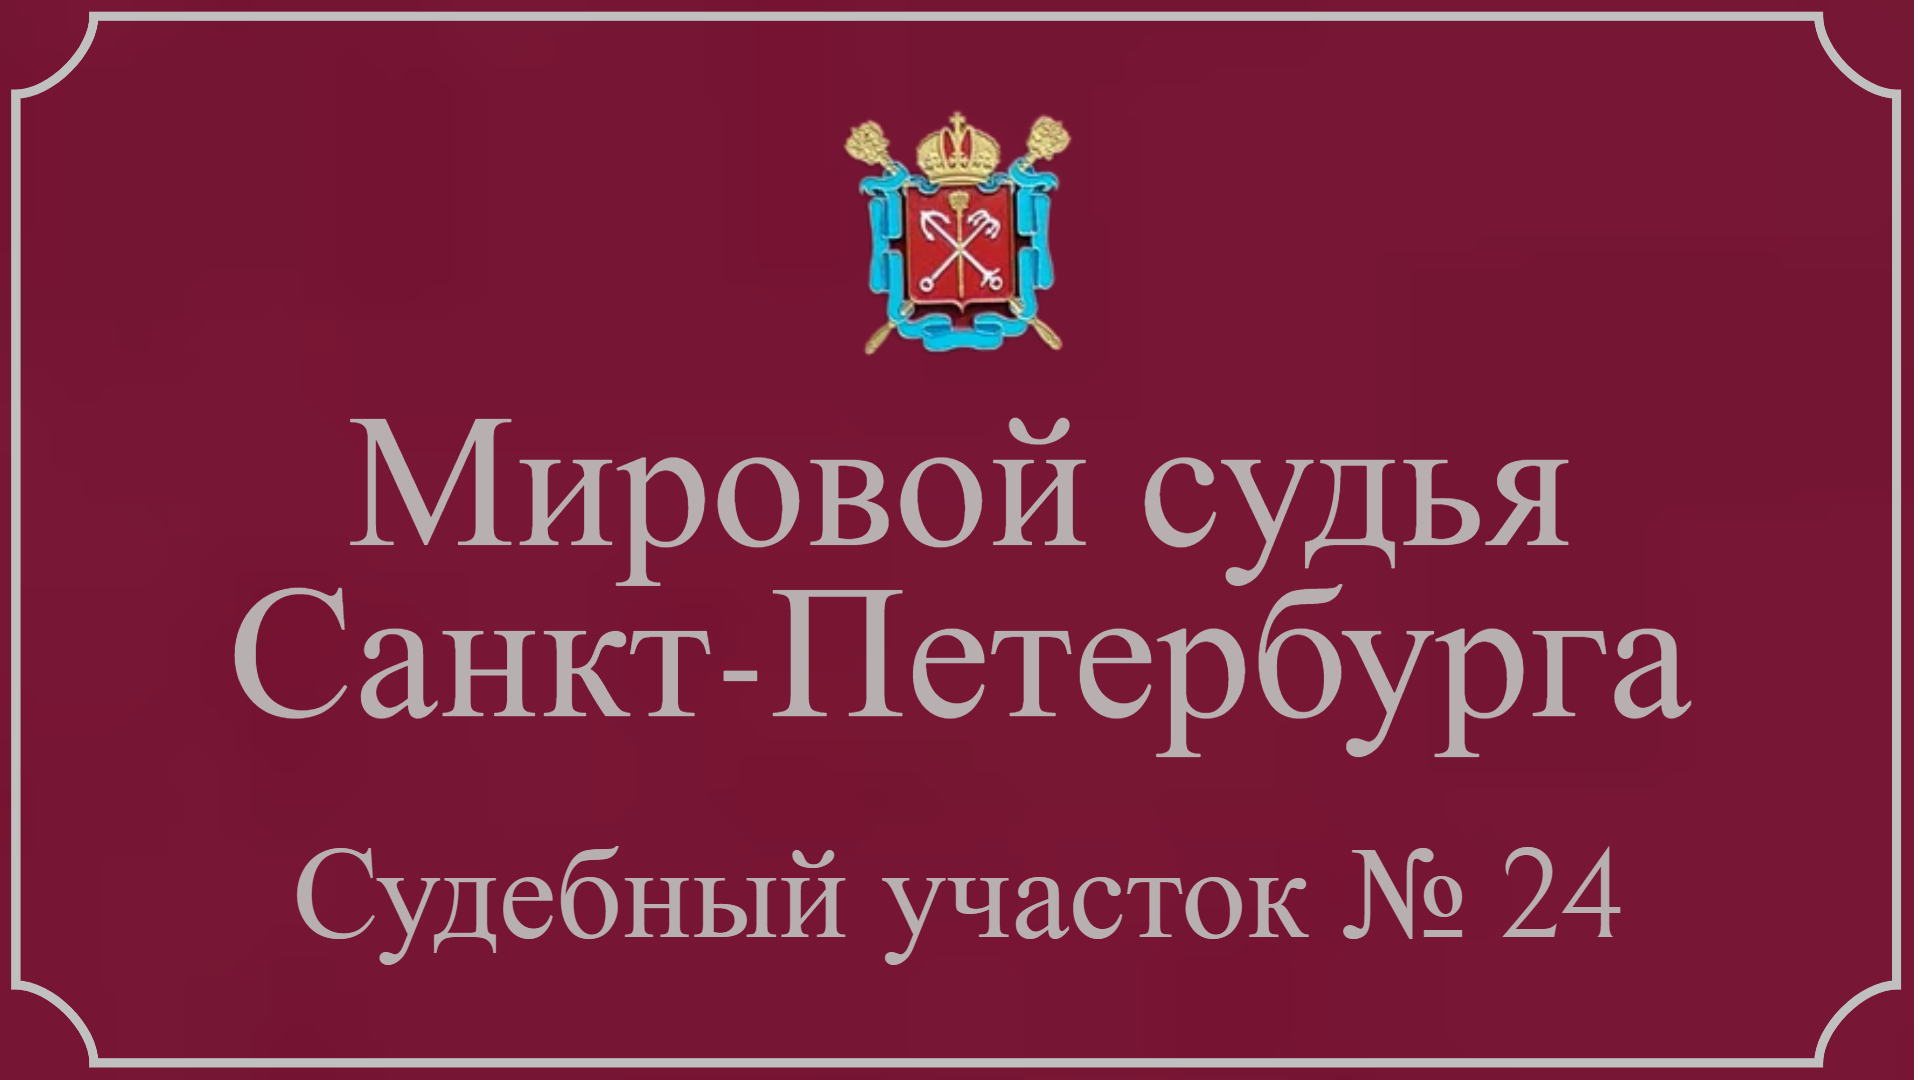 Информация по 24 судебному участку в Санкт-Петербурге.